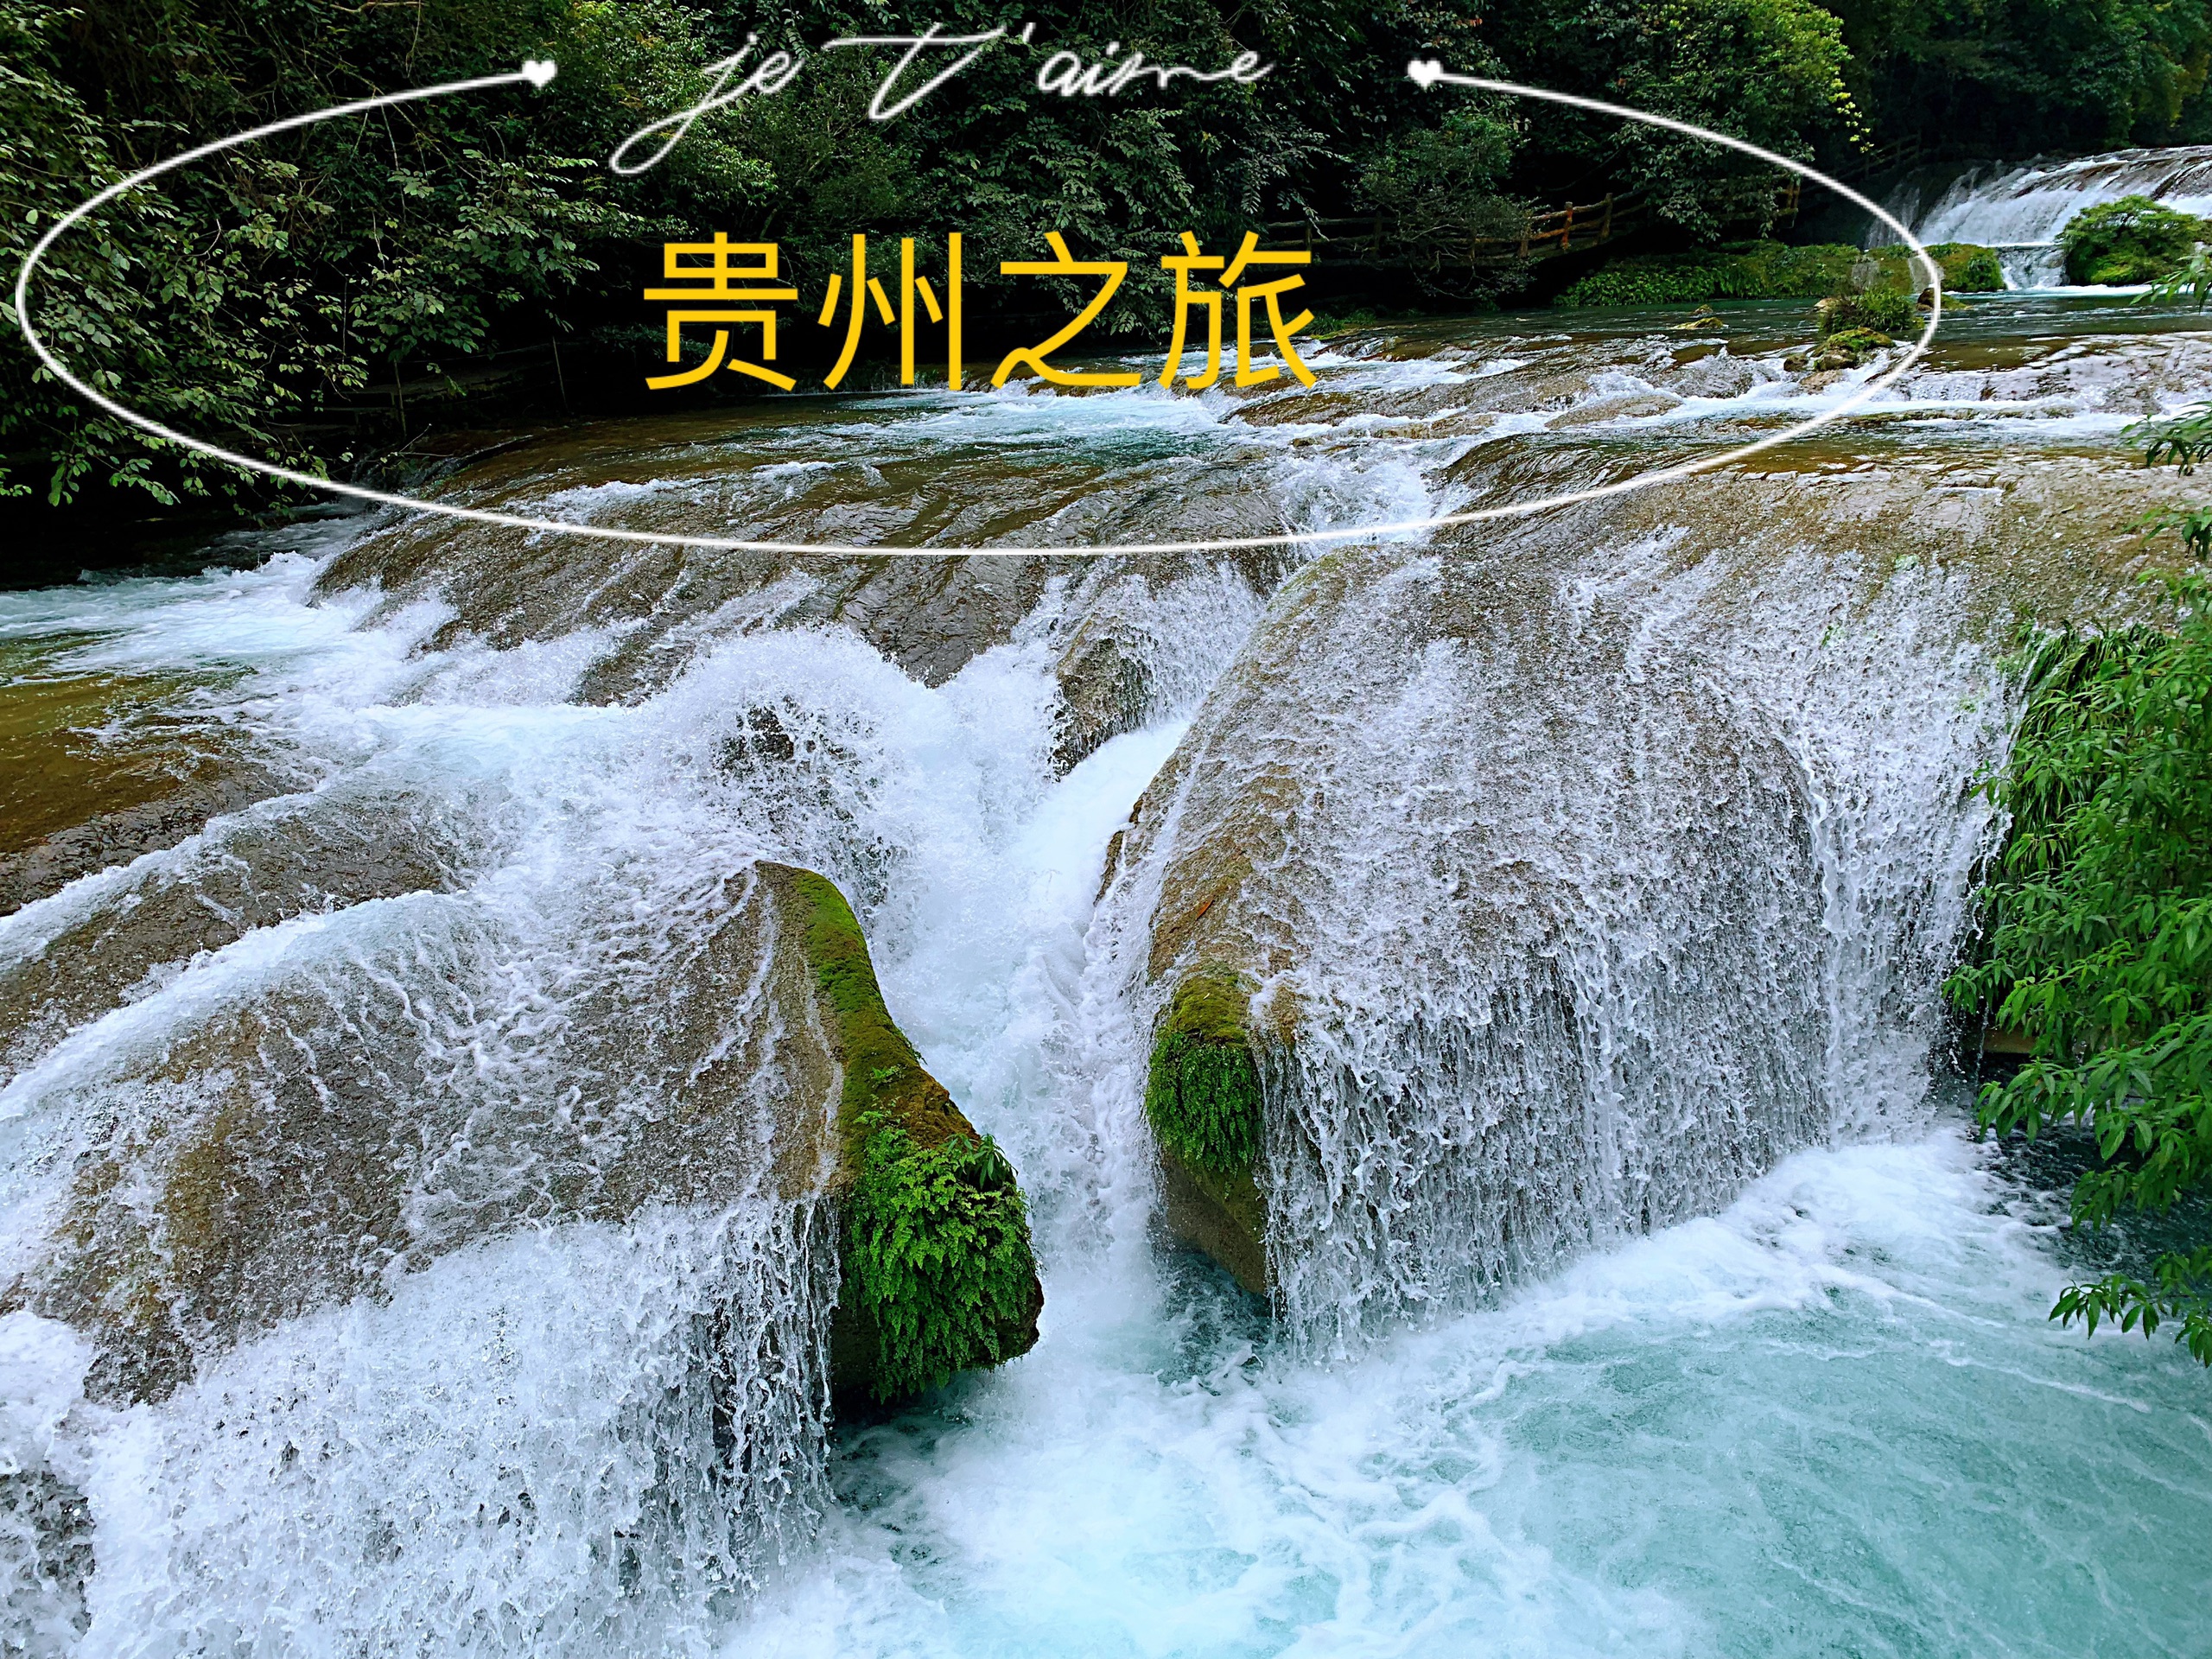 自驾游贵州（5日4夜）-小七孔景区-六十八级跌水瀑布